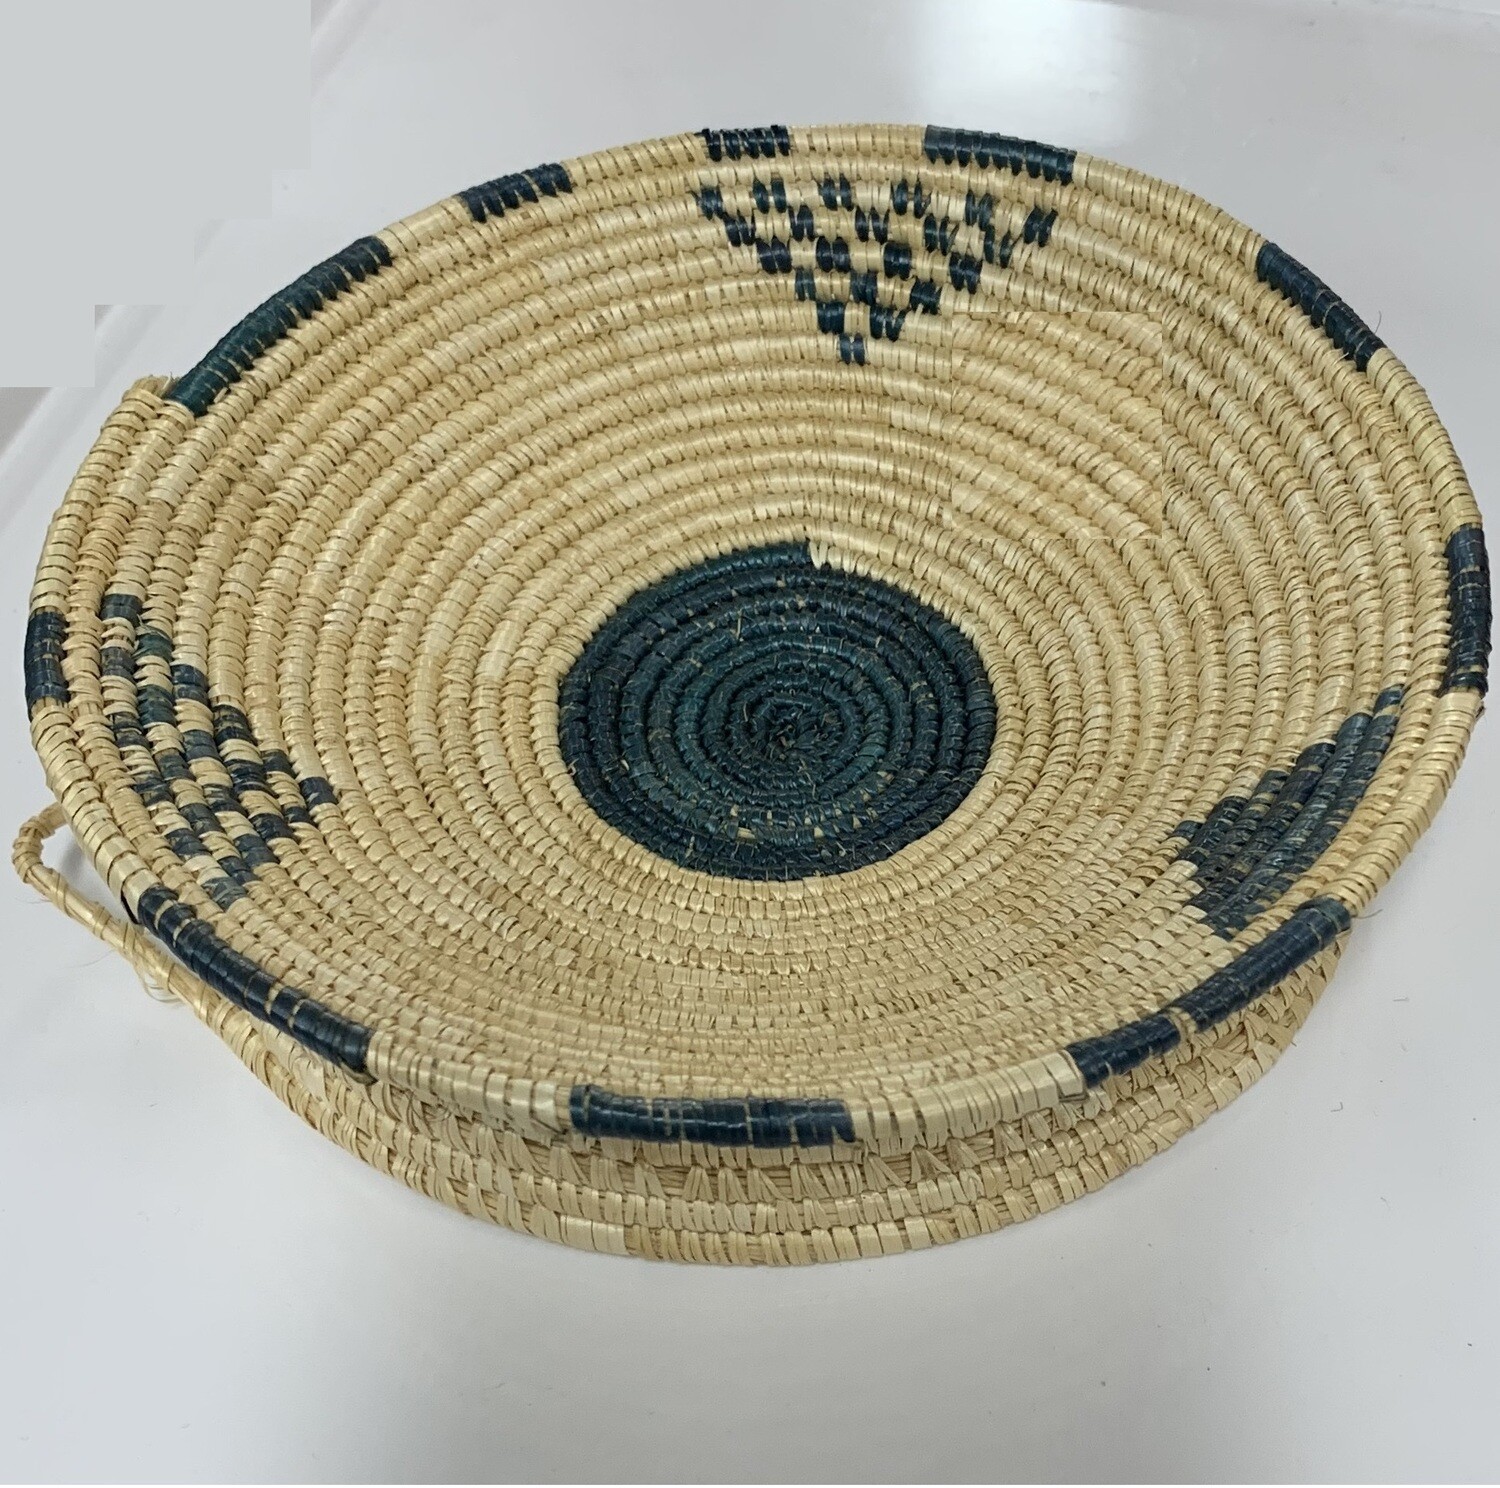 ፈንዲሻ ማቅረቢያ Ethiopian basketwork for Pop corn